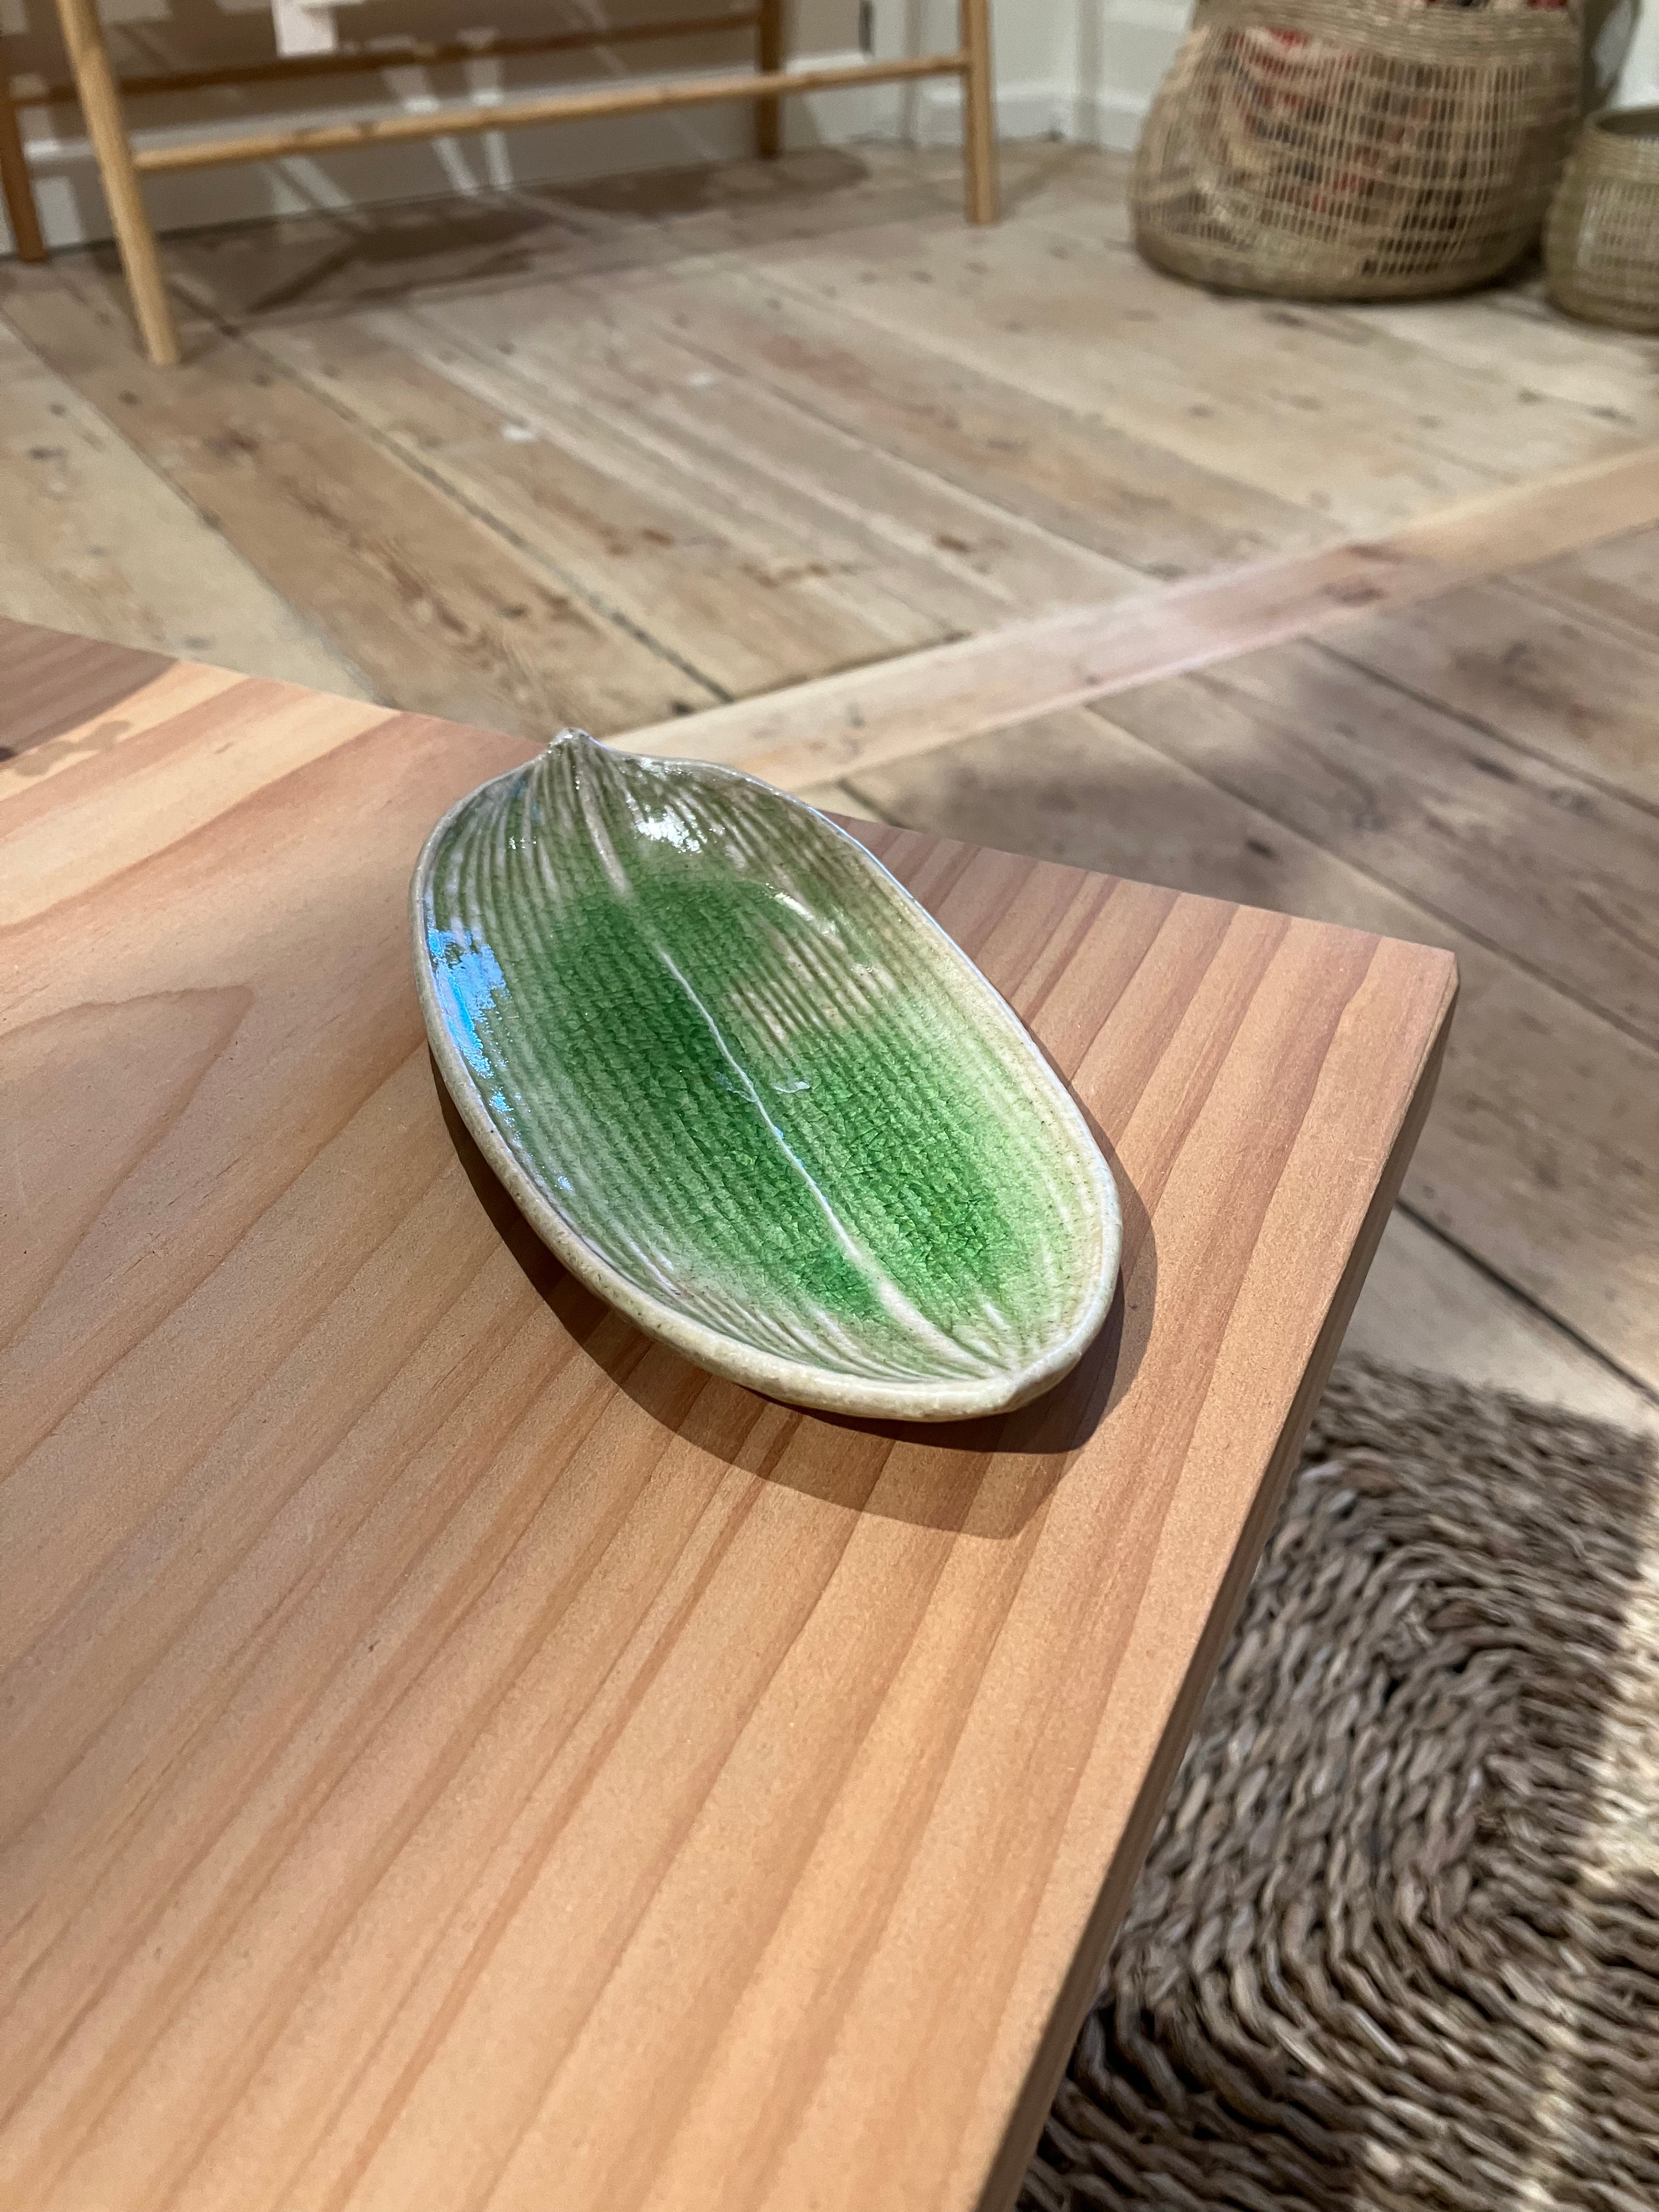 Mini plate shaped like a green leaf